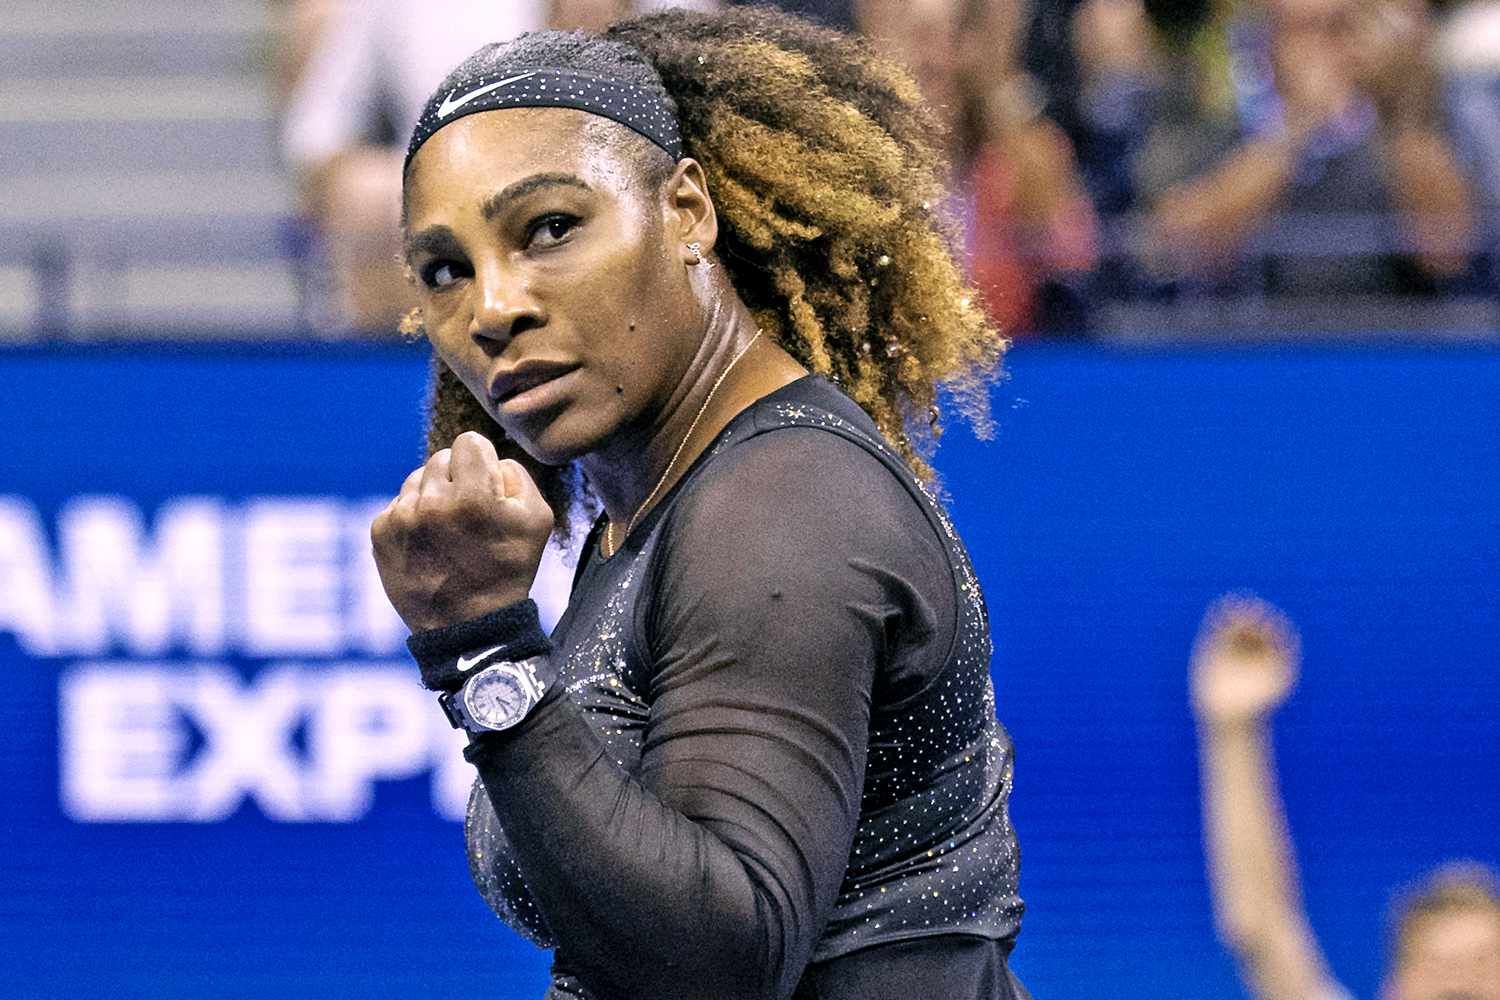 Anunțul momentului la Met Gala vine de la Serena Williams. Vestea face înconjurul lumii chiar acum